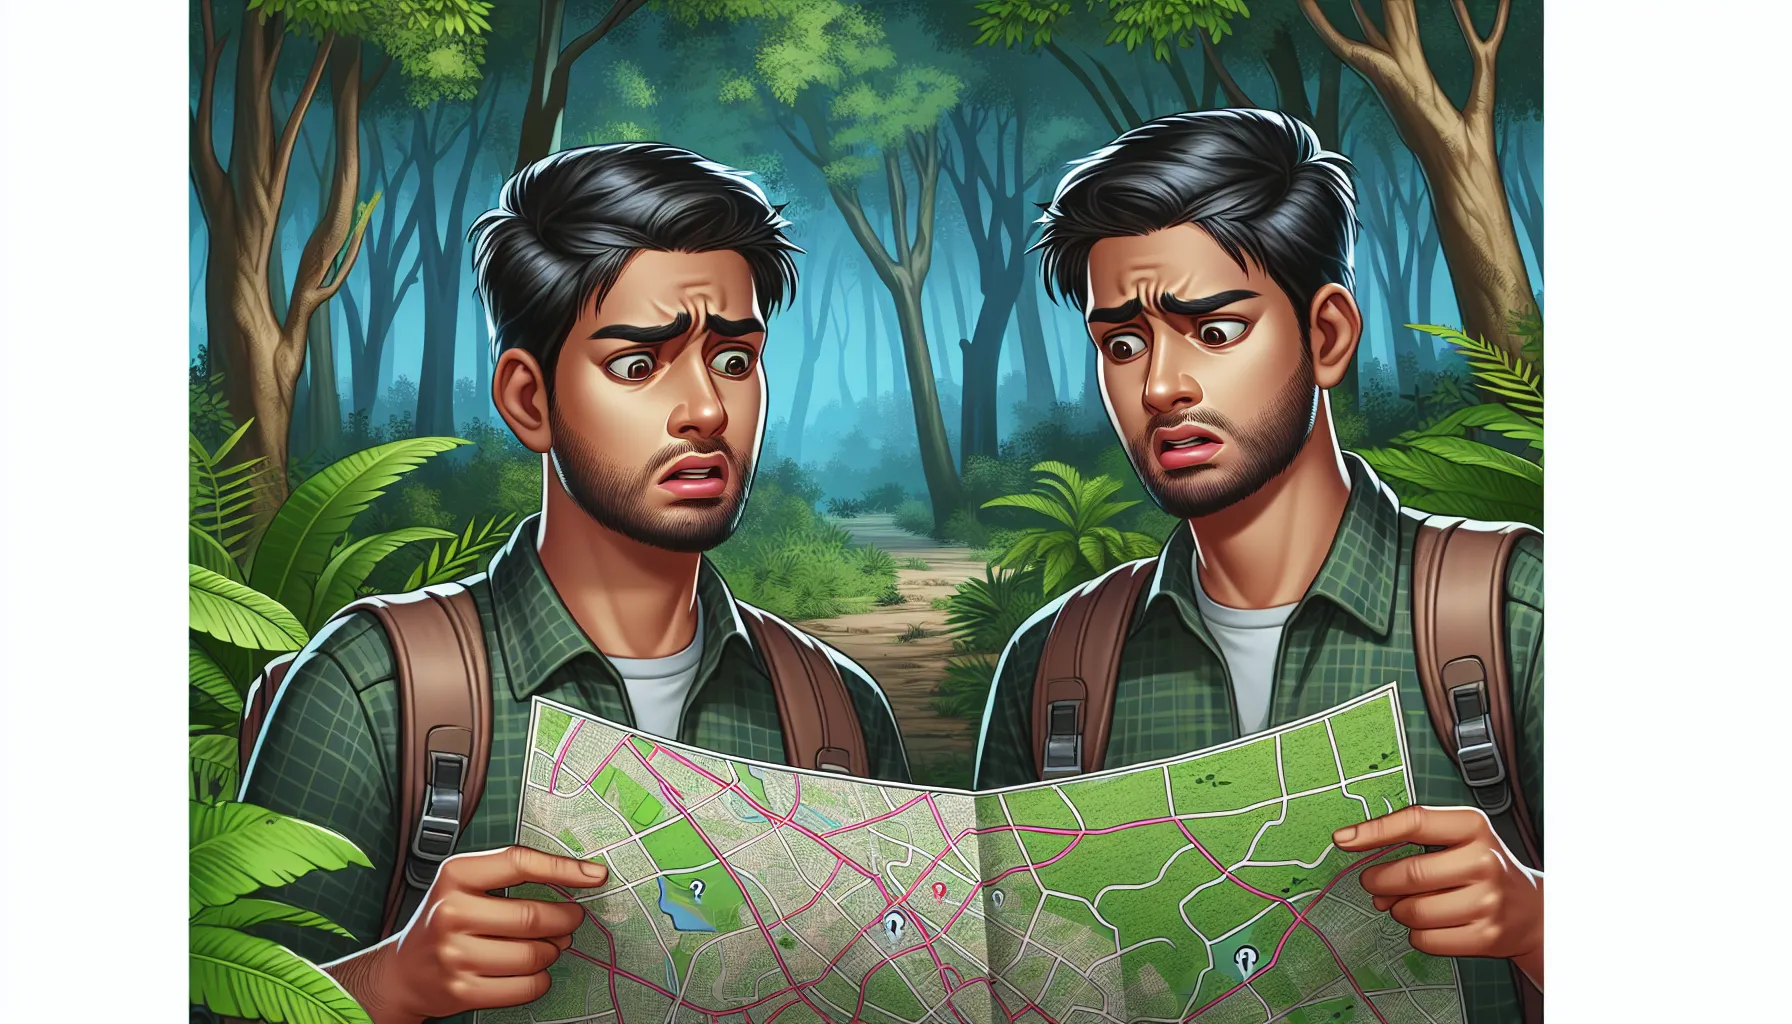 Imagen: Ilustración de una persona mirando un mapa con expresión de confusión en medio de un bosque, resaltando la importancia de una guía para evitar perderse.